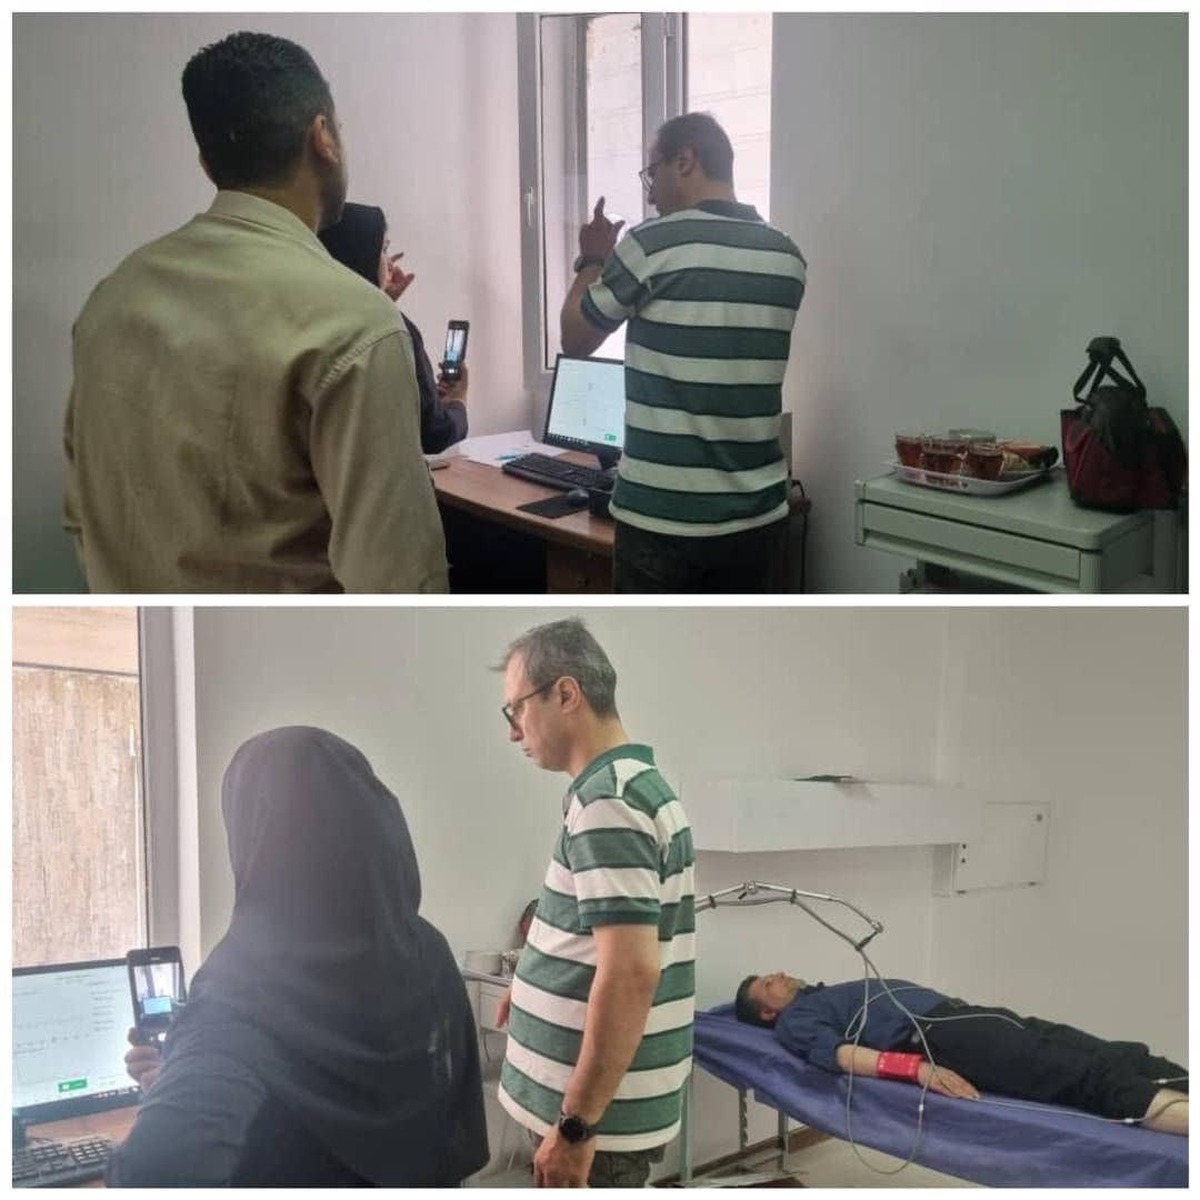 دستگاه ABI در مرکز شهید رجایی کرج ‏به منظور سنجش فشار خون در عروق پا‌ها نصب و راه اندازی شد.